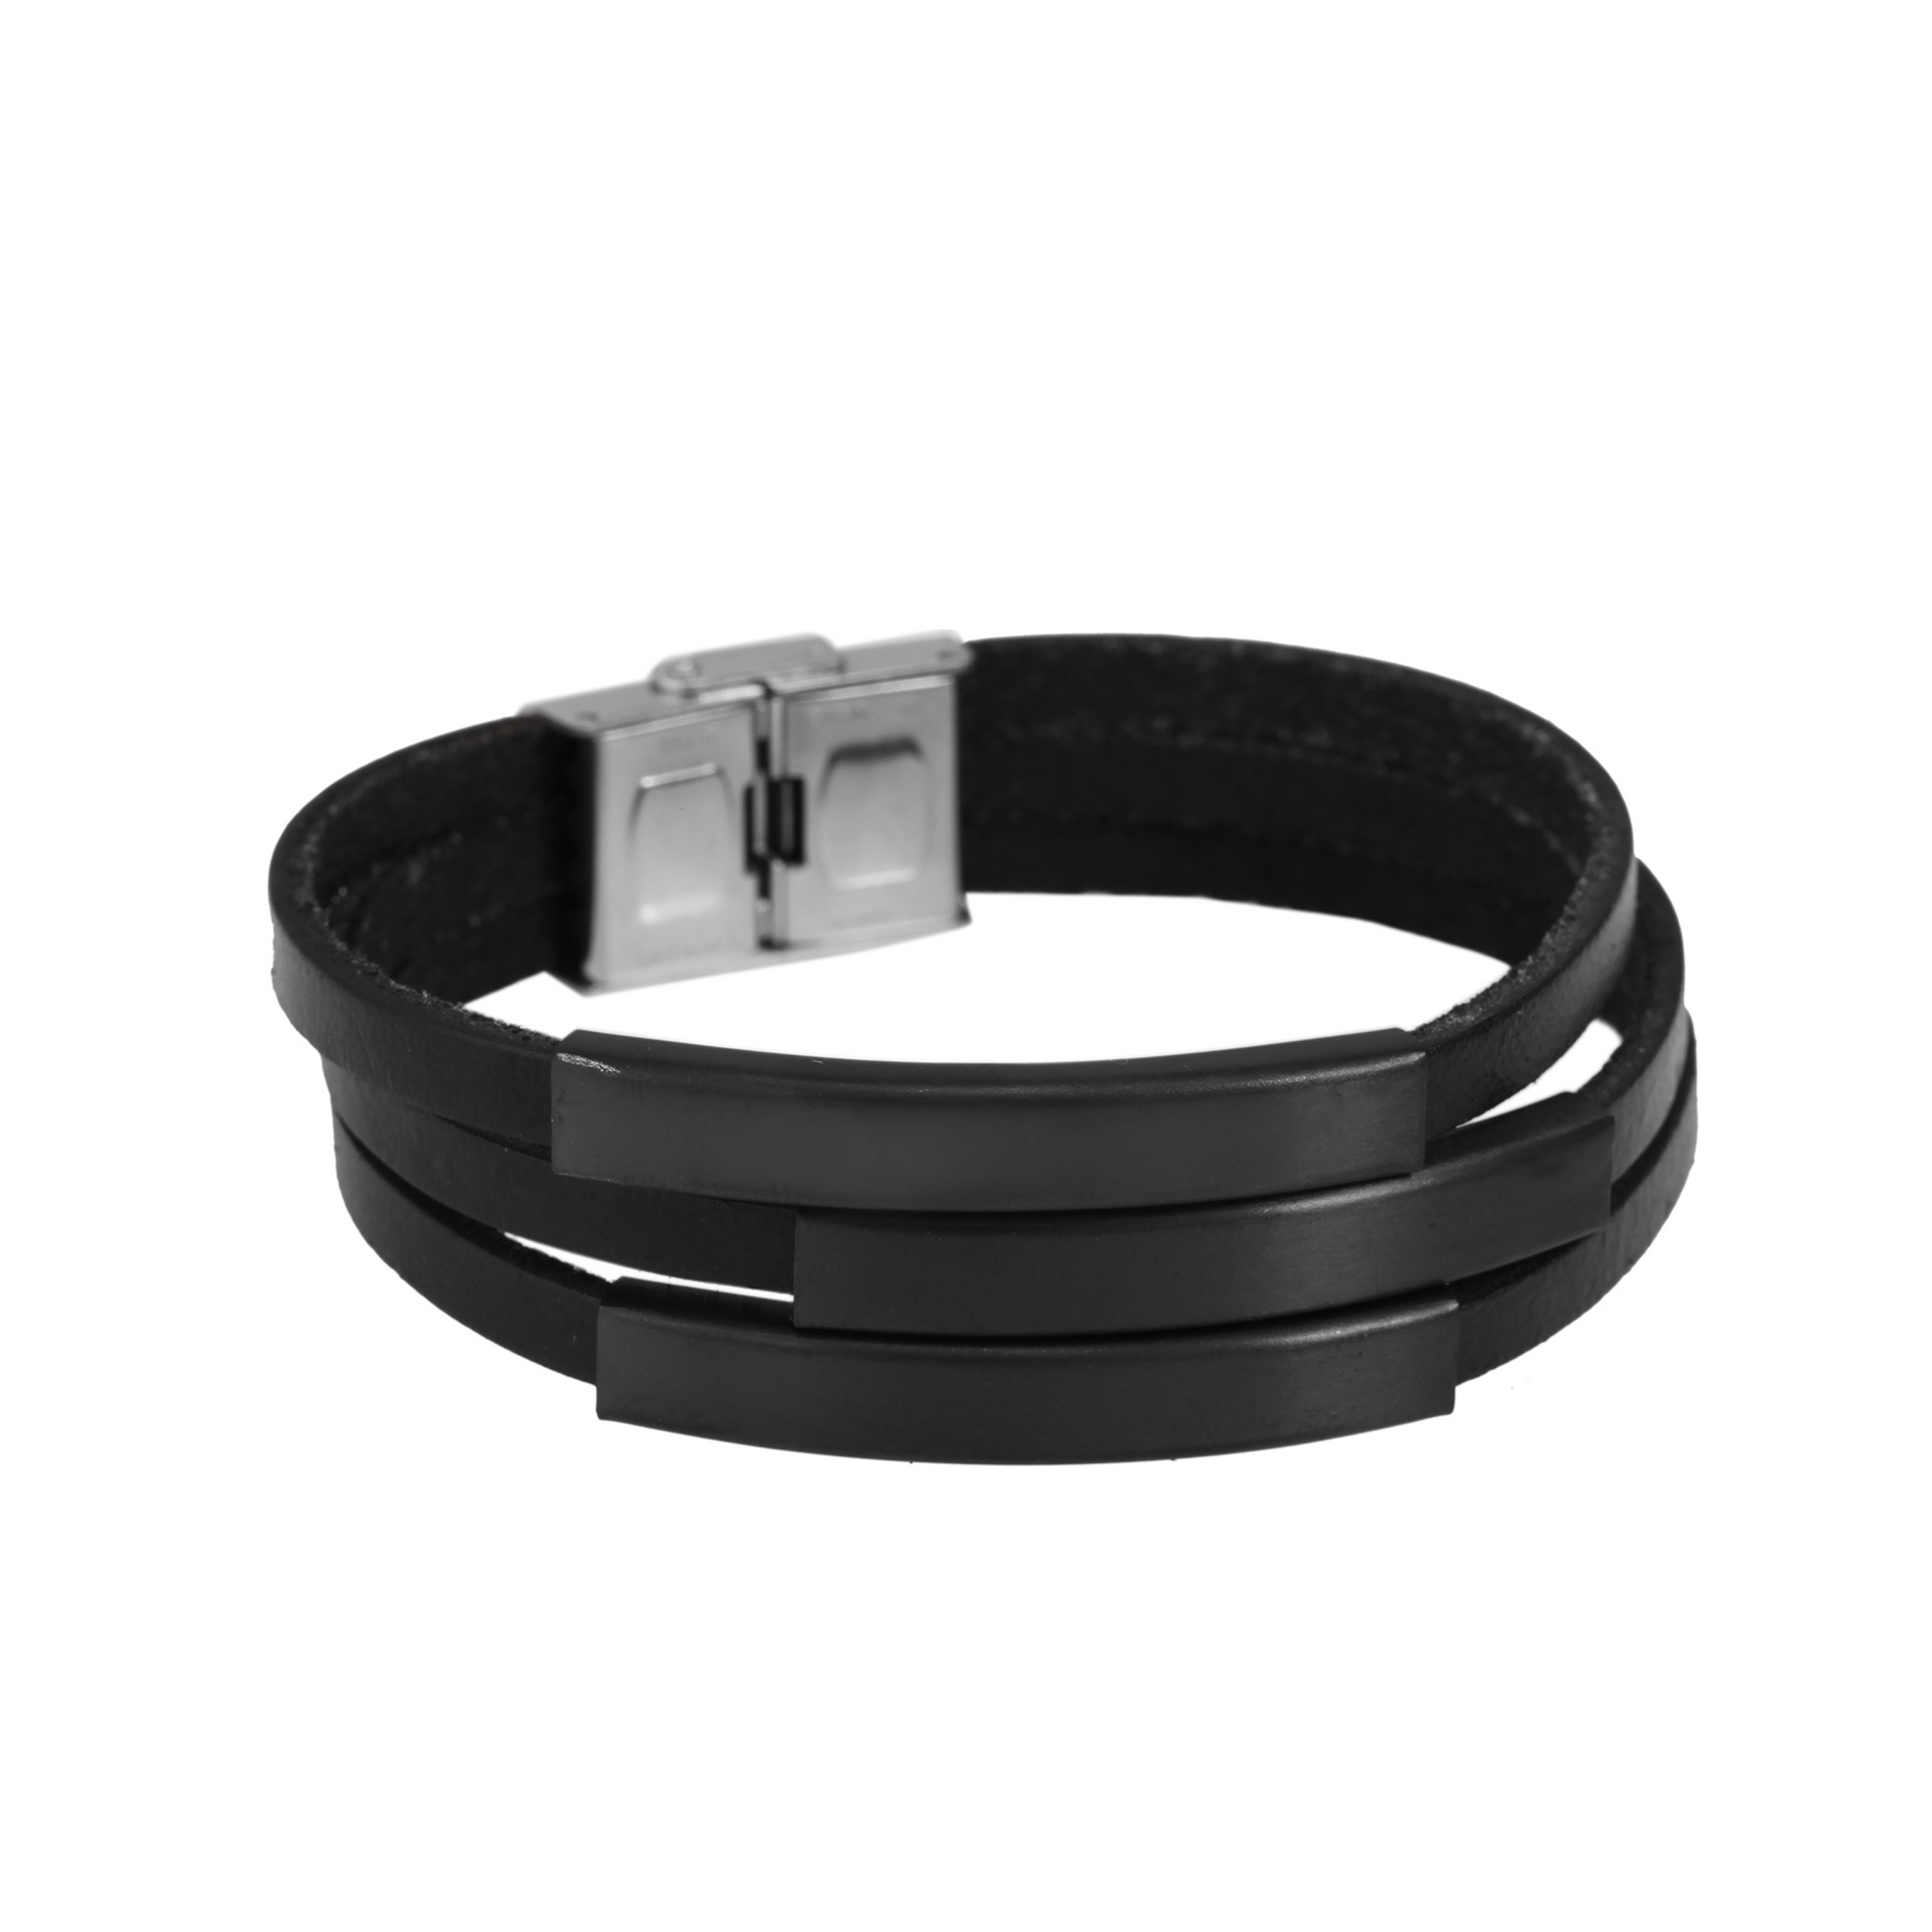 VNOX Personalisiert Anpassen Gravieren von Edelstahl Medizinischer Alarm Armband Medizinisches Silikon Schwarzes Armband für Herren Damen,18-22.5cm Verstellbar. 